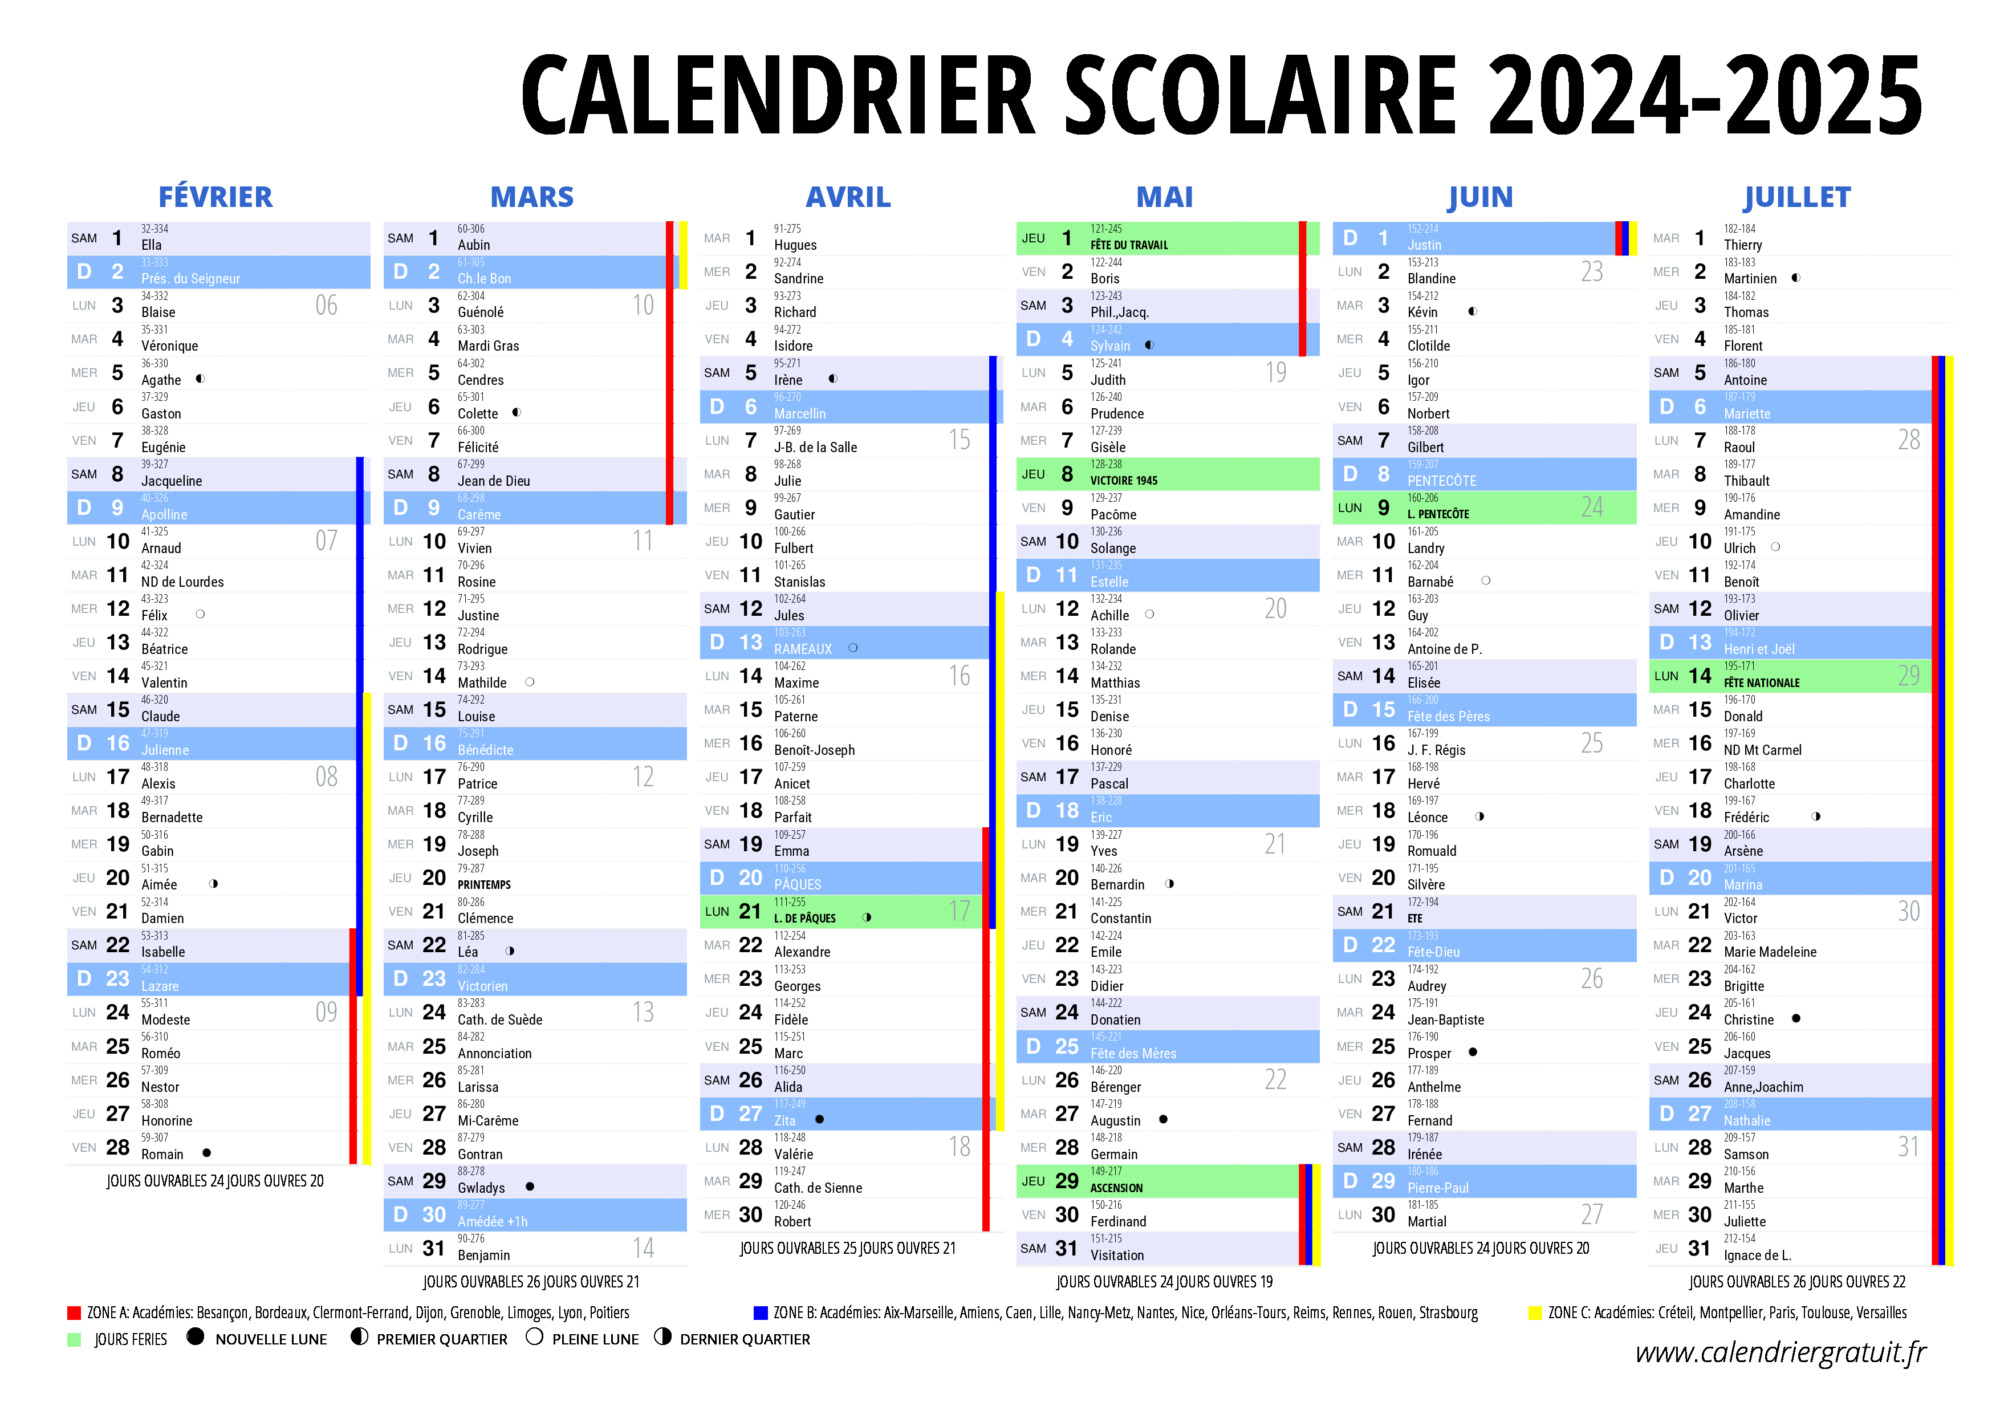 https://www.calendriergratuit.fr/images/scolaire2/calendrier-scolaire-2025-1.jpg